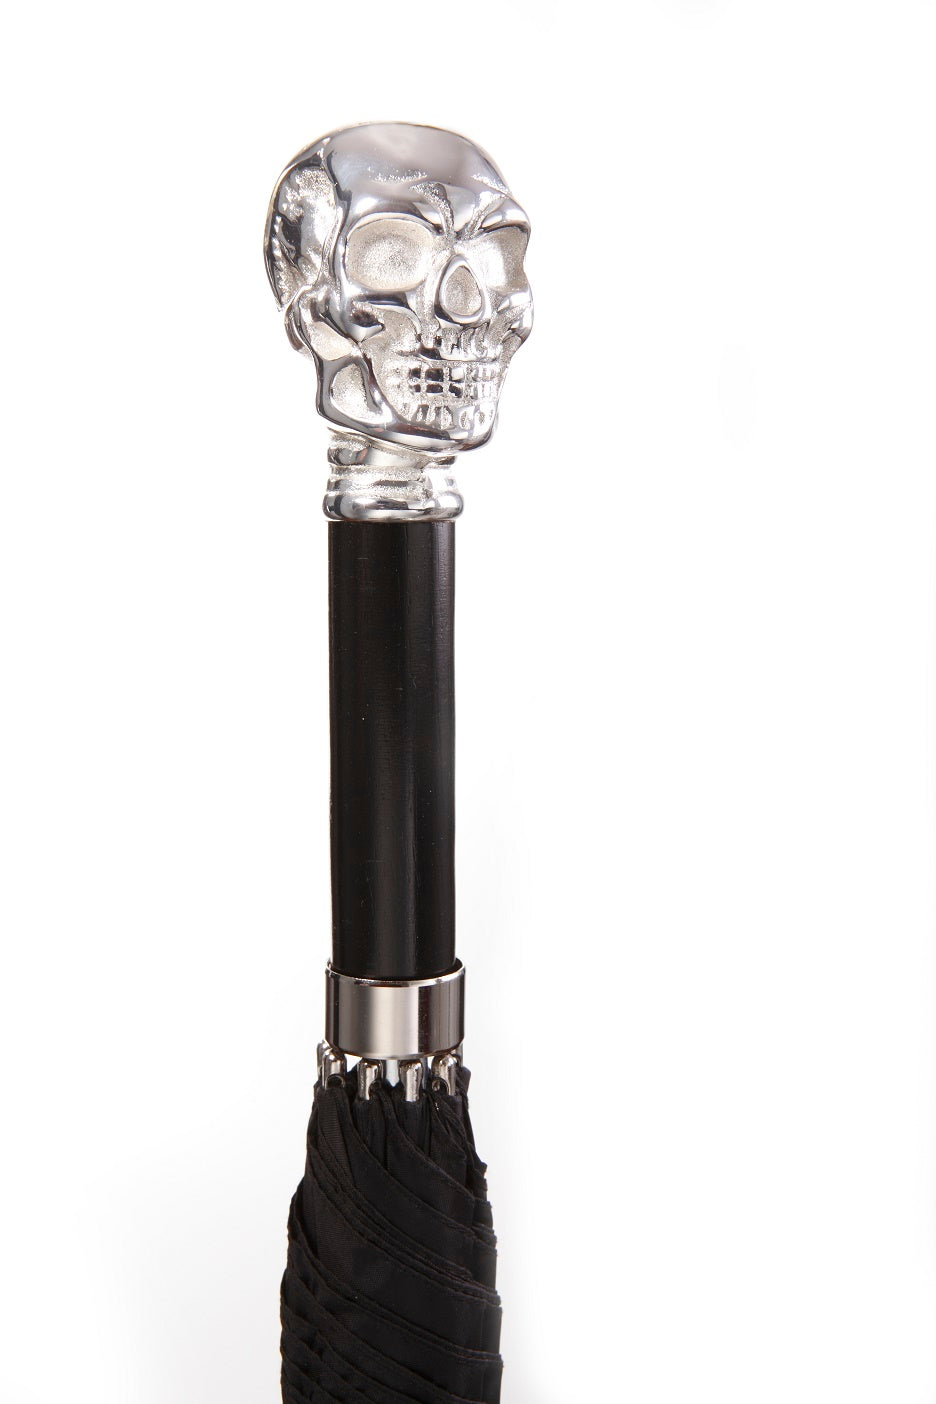  Skull Umbrella | Chrome Skull on Black Nylon Umbrella